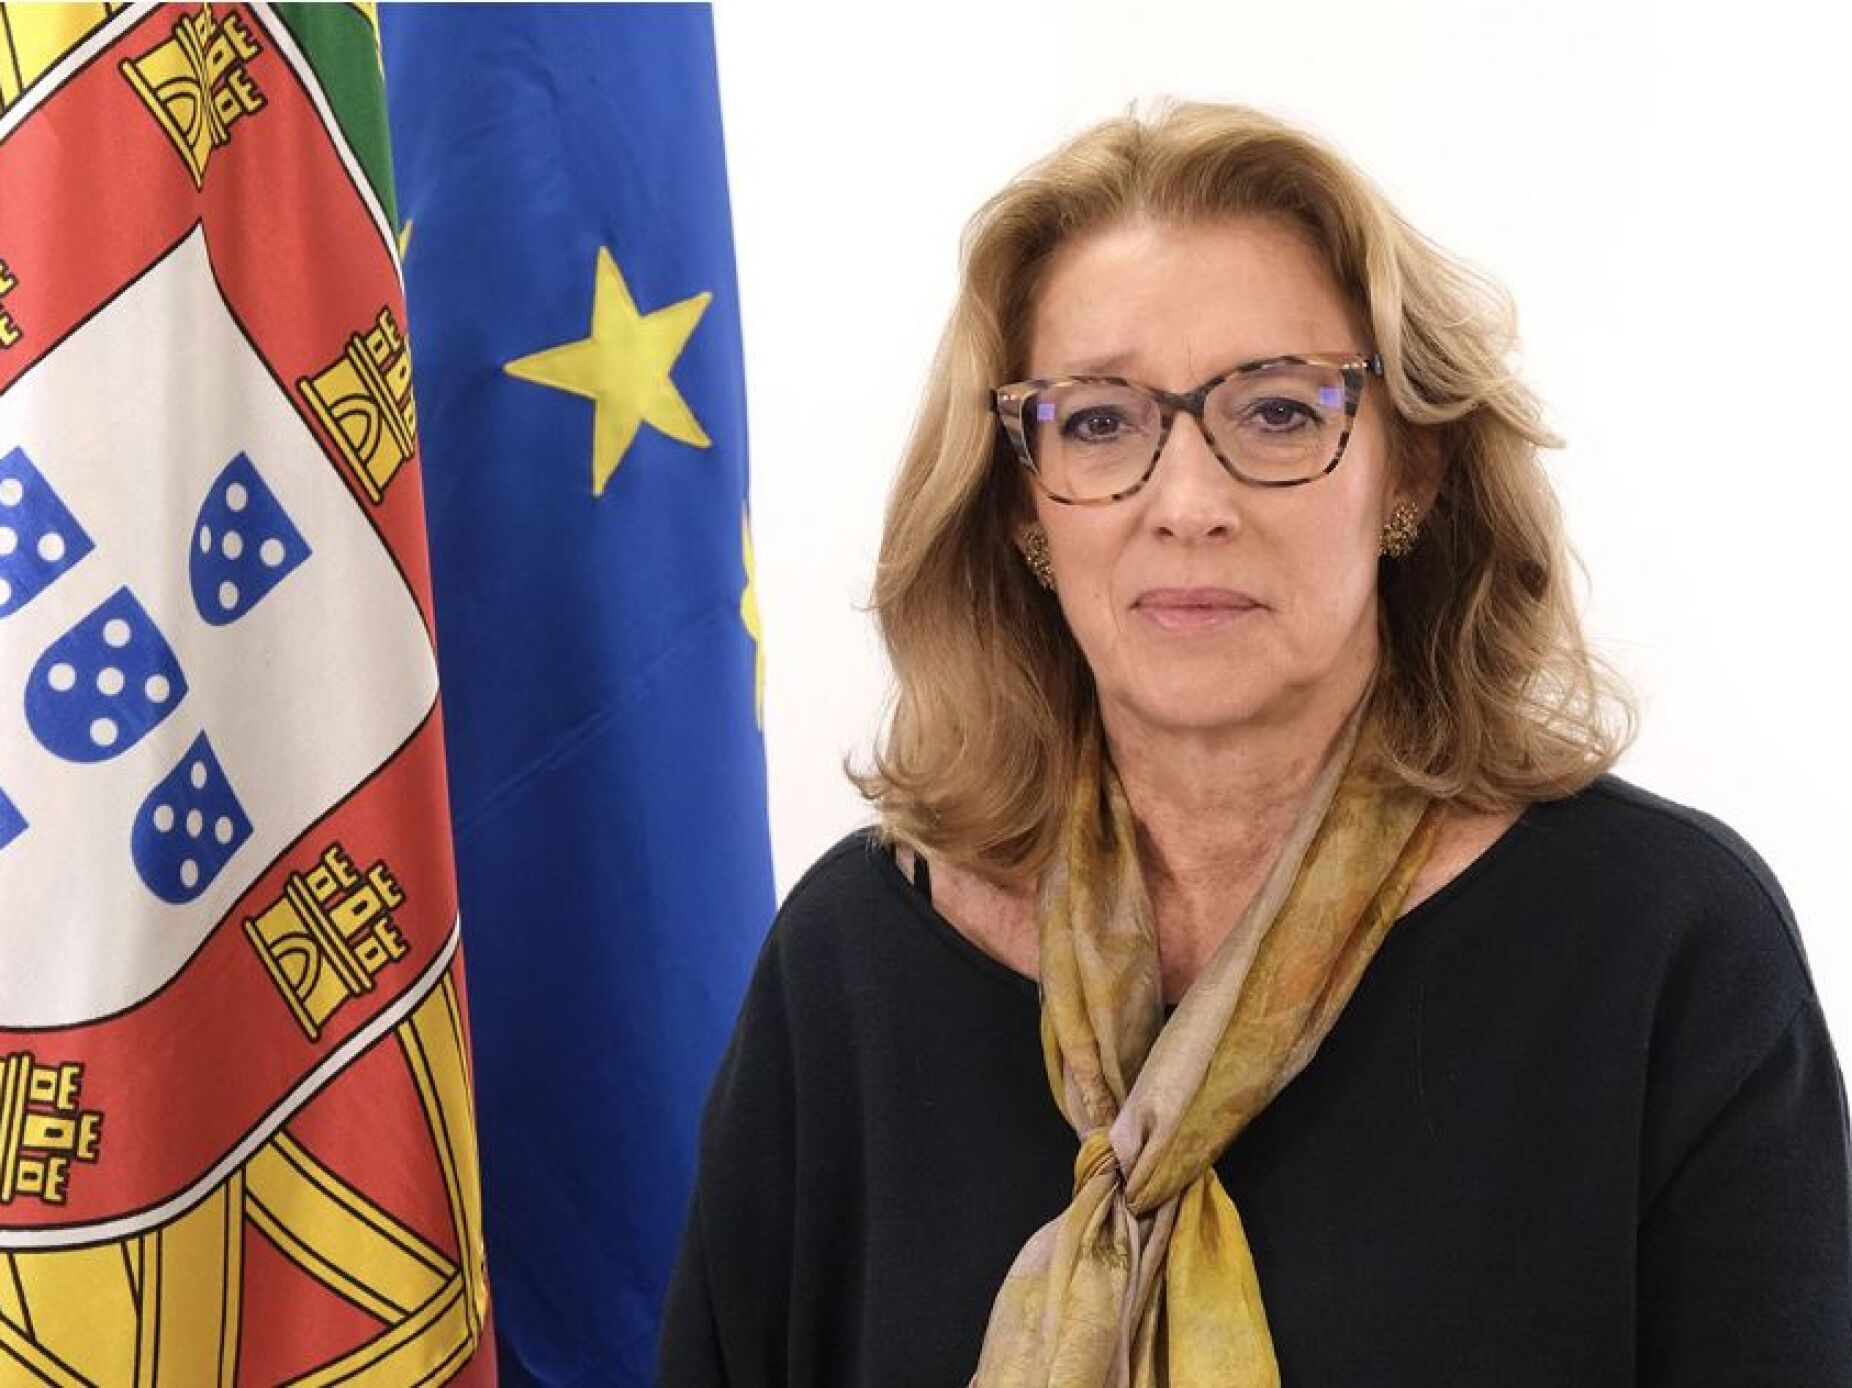 Ministra acusa Ana Jorge de "total inação" e rejeita saneamento político na Santa Casa